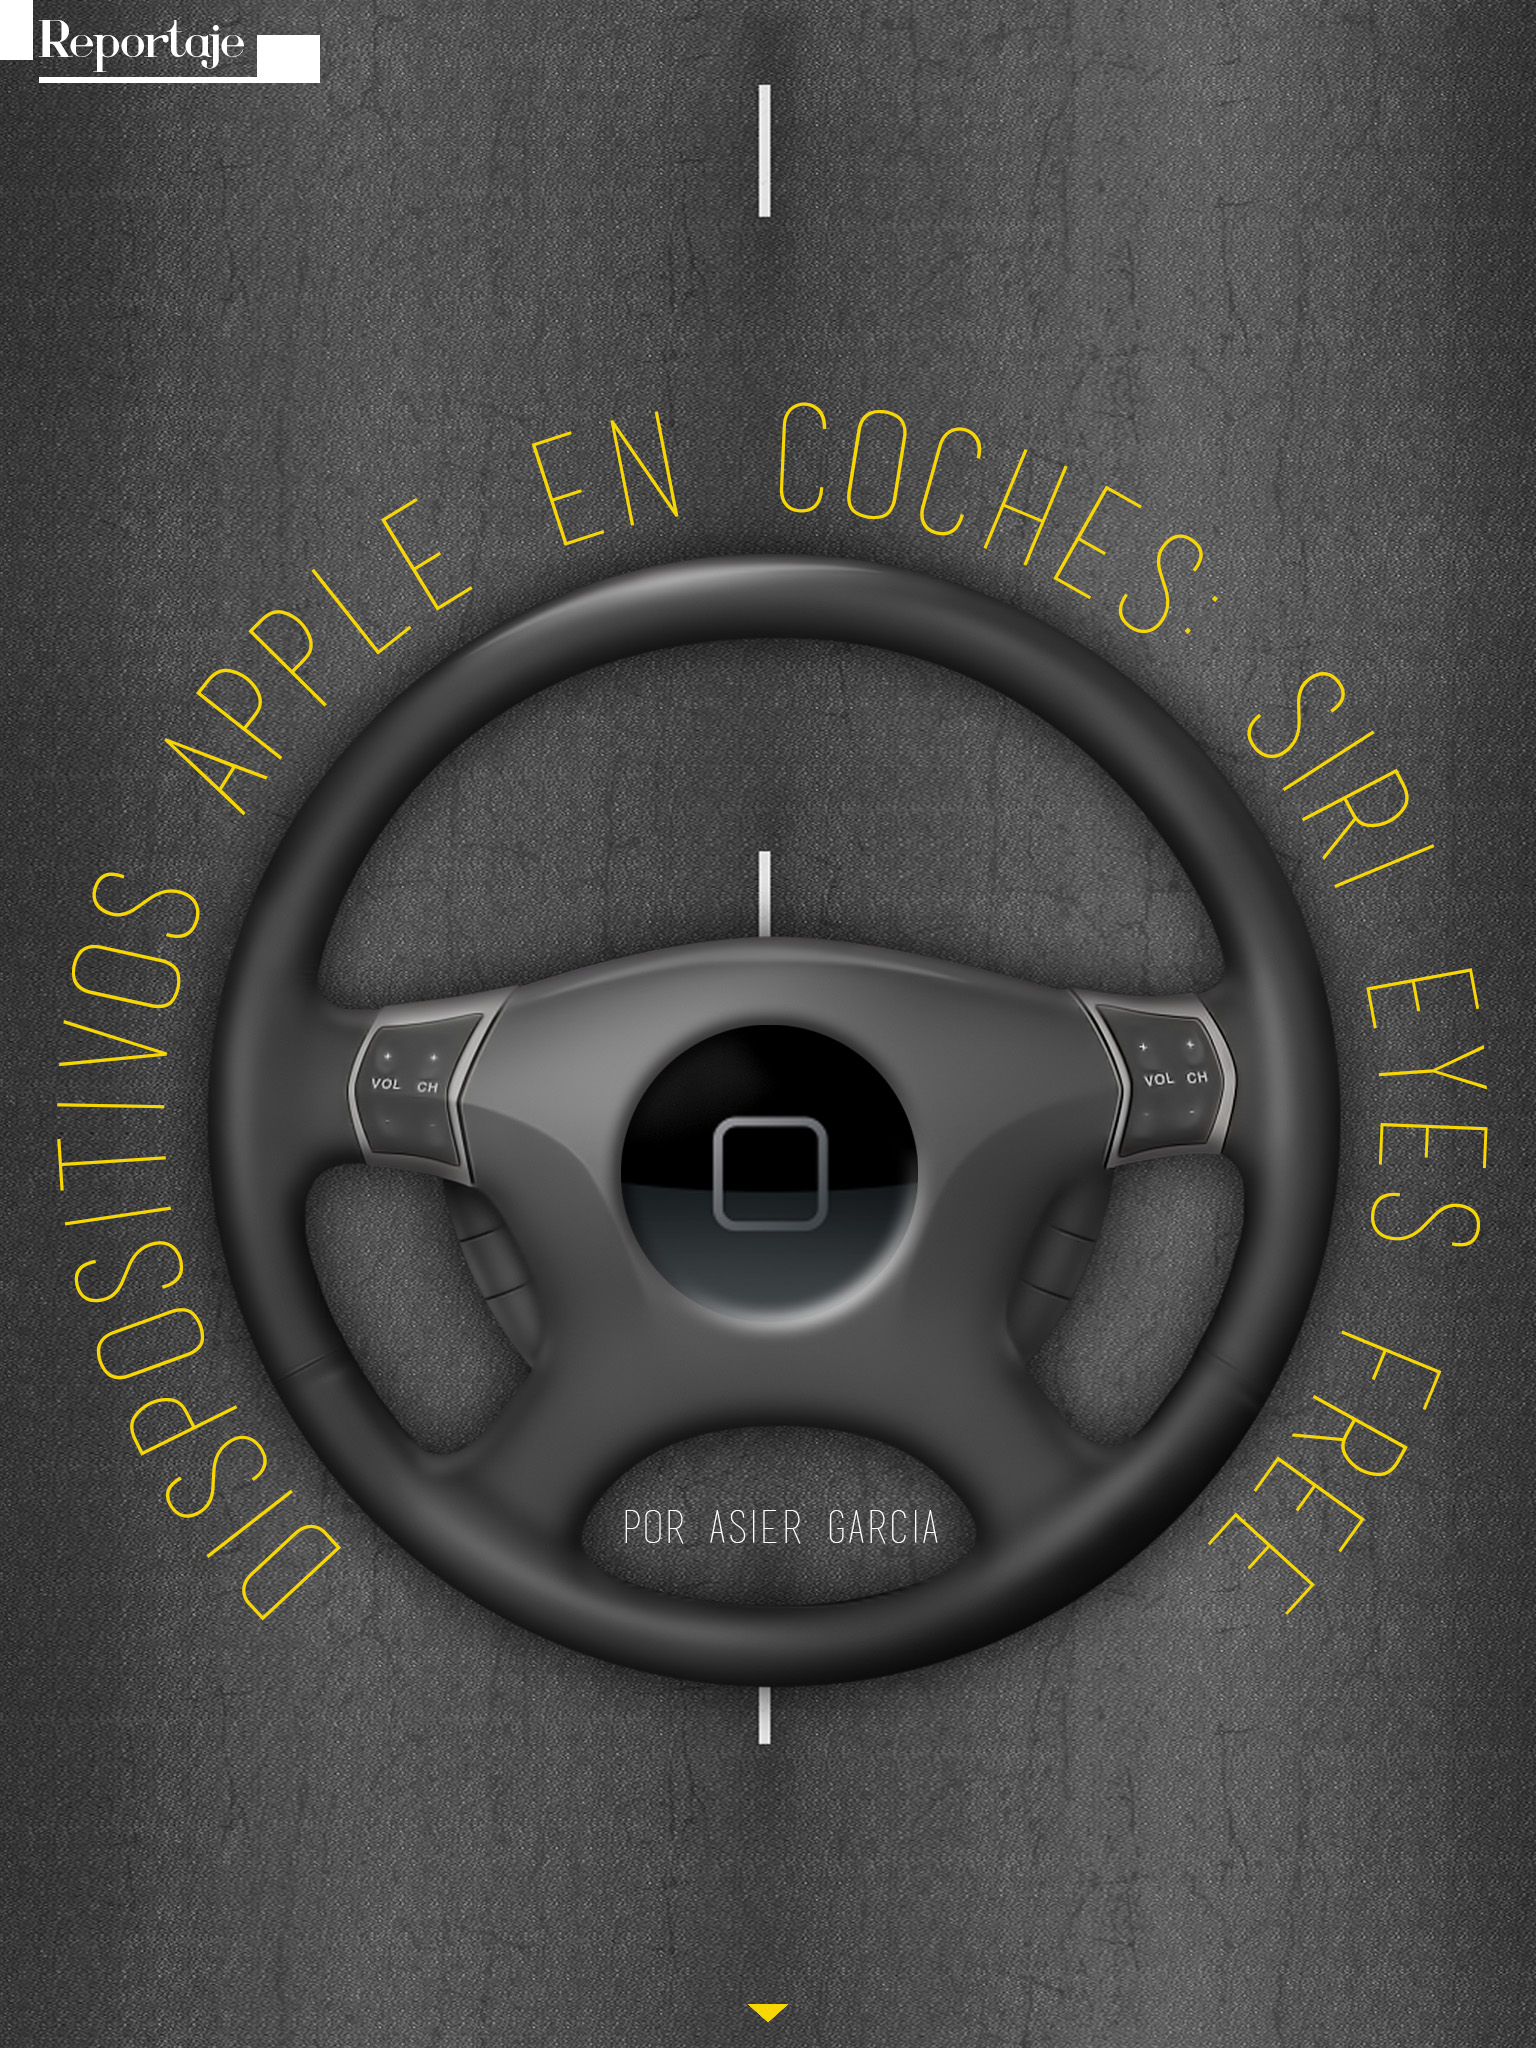 dispositivos apple en coches: siri eyes free. Continúa el artículo abajo